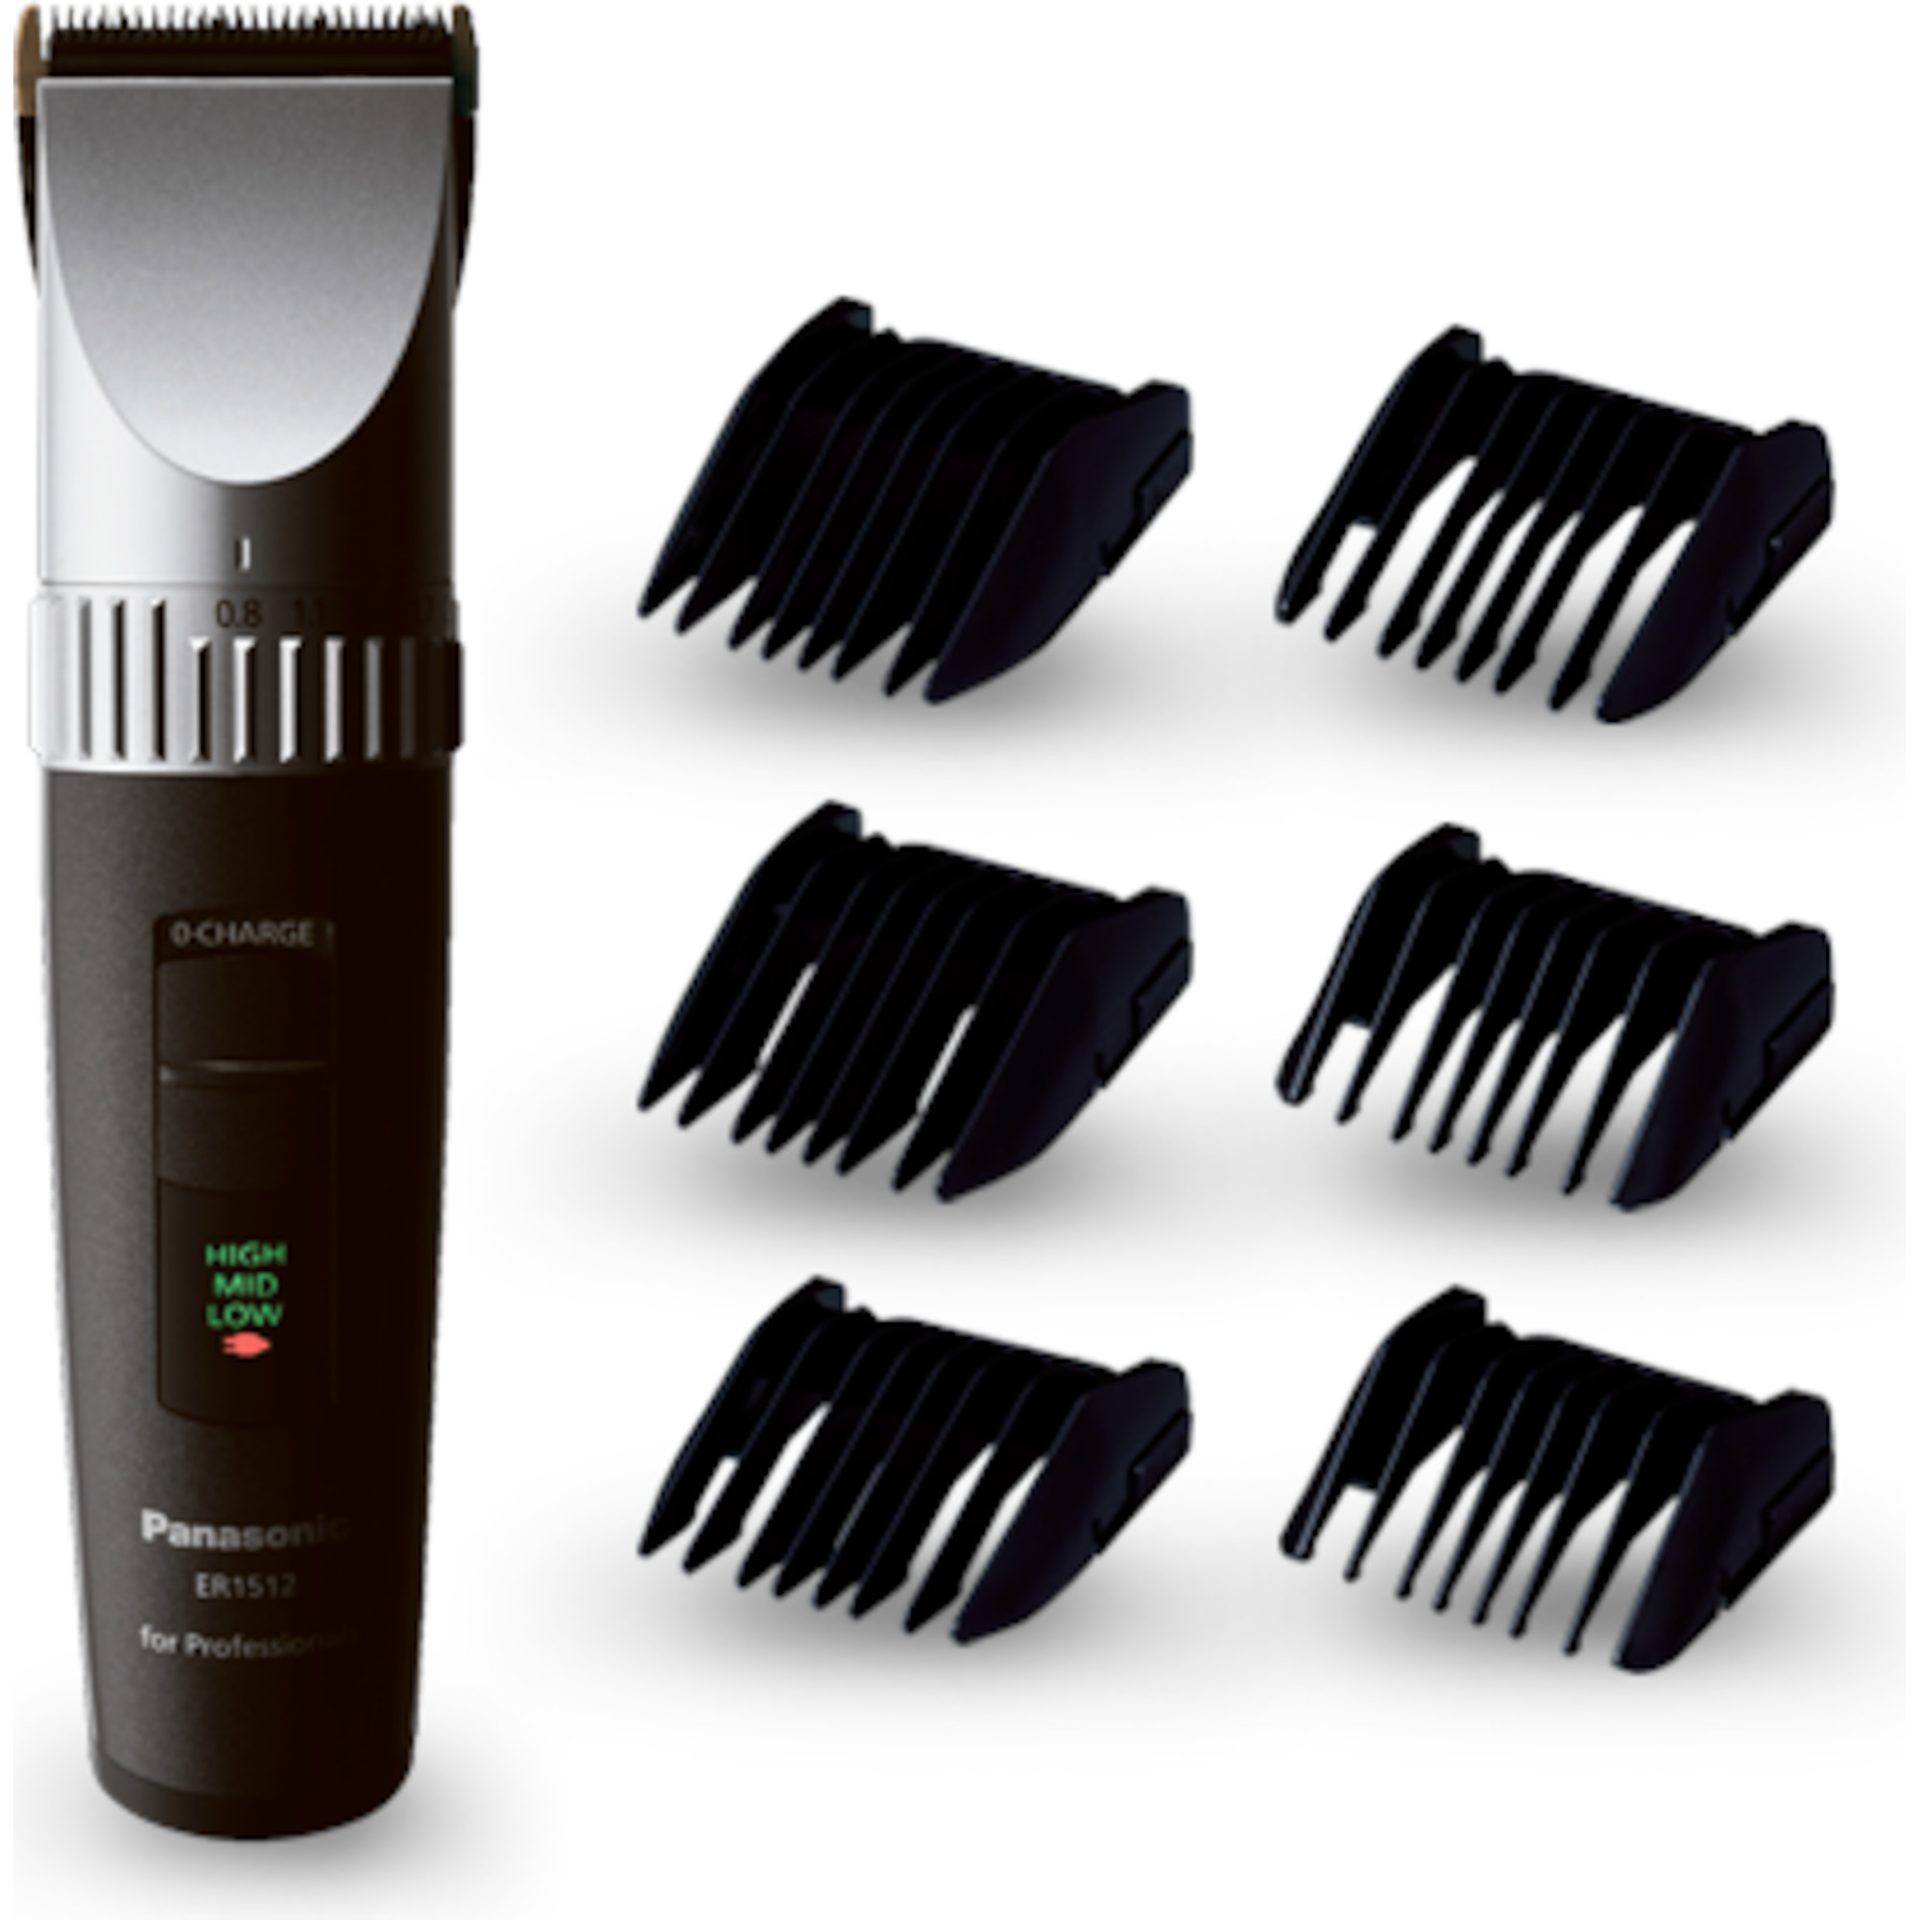 Panasonic ER1512K801 profesionální zastřihovač vlasů (6100 ot./min,, délka účesu 0,8–15 mm, 6 nástavců, LED indikátor baterie), černá a stříbrná